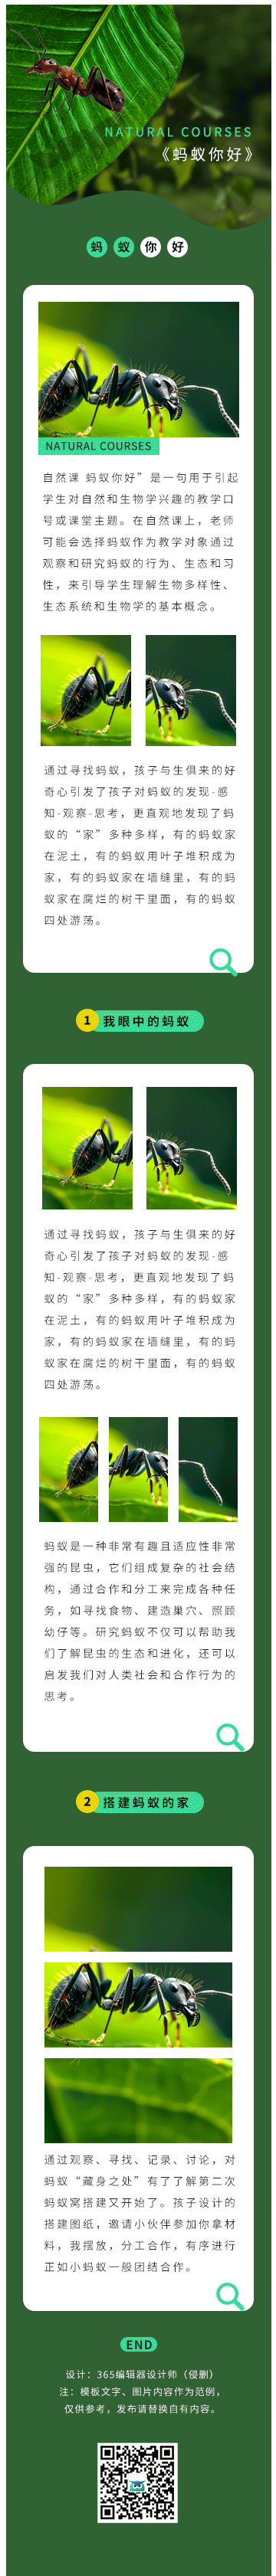 自然课程小蚂蚁科普动物教育绿色